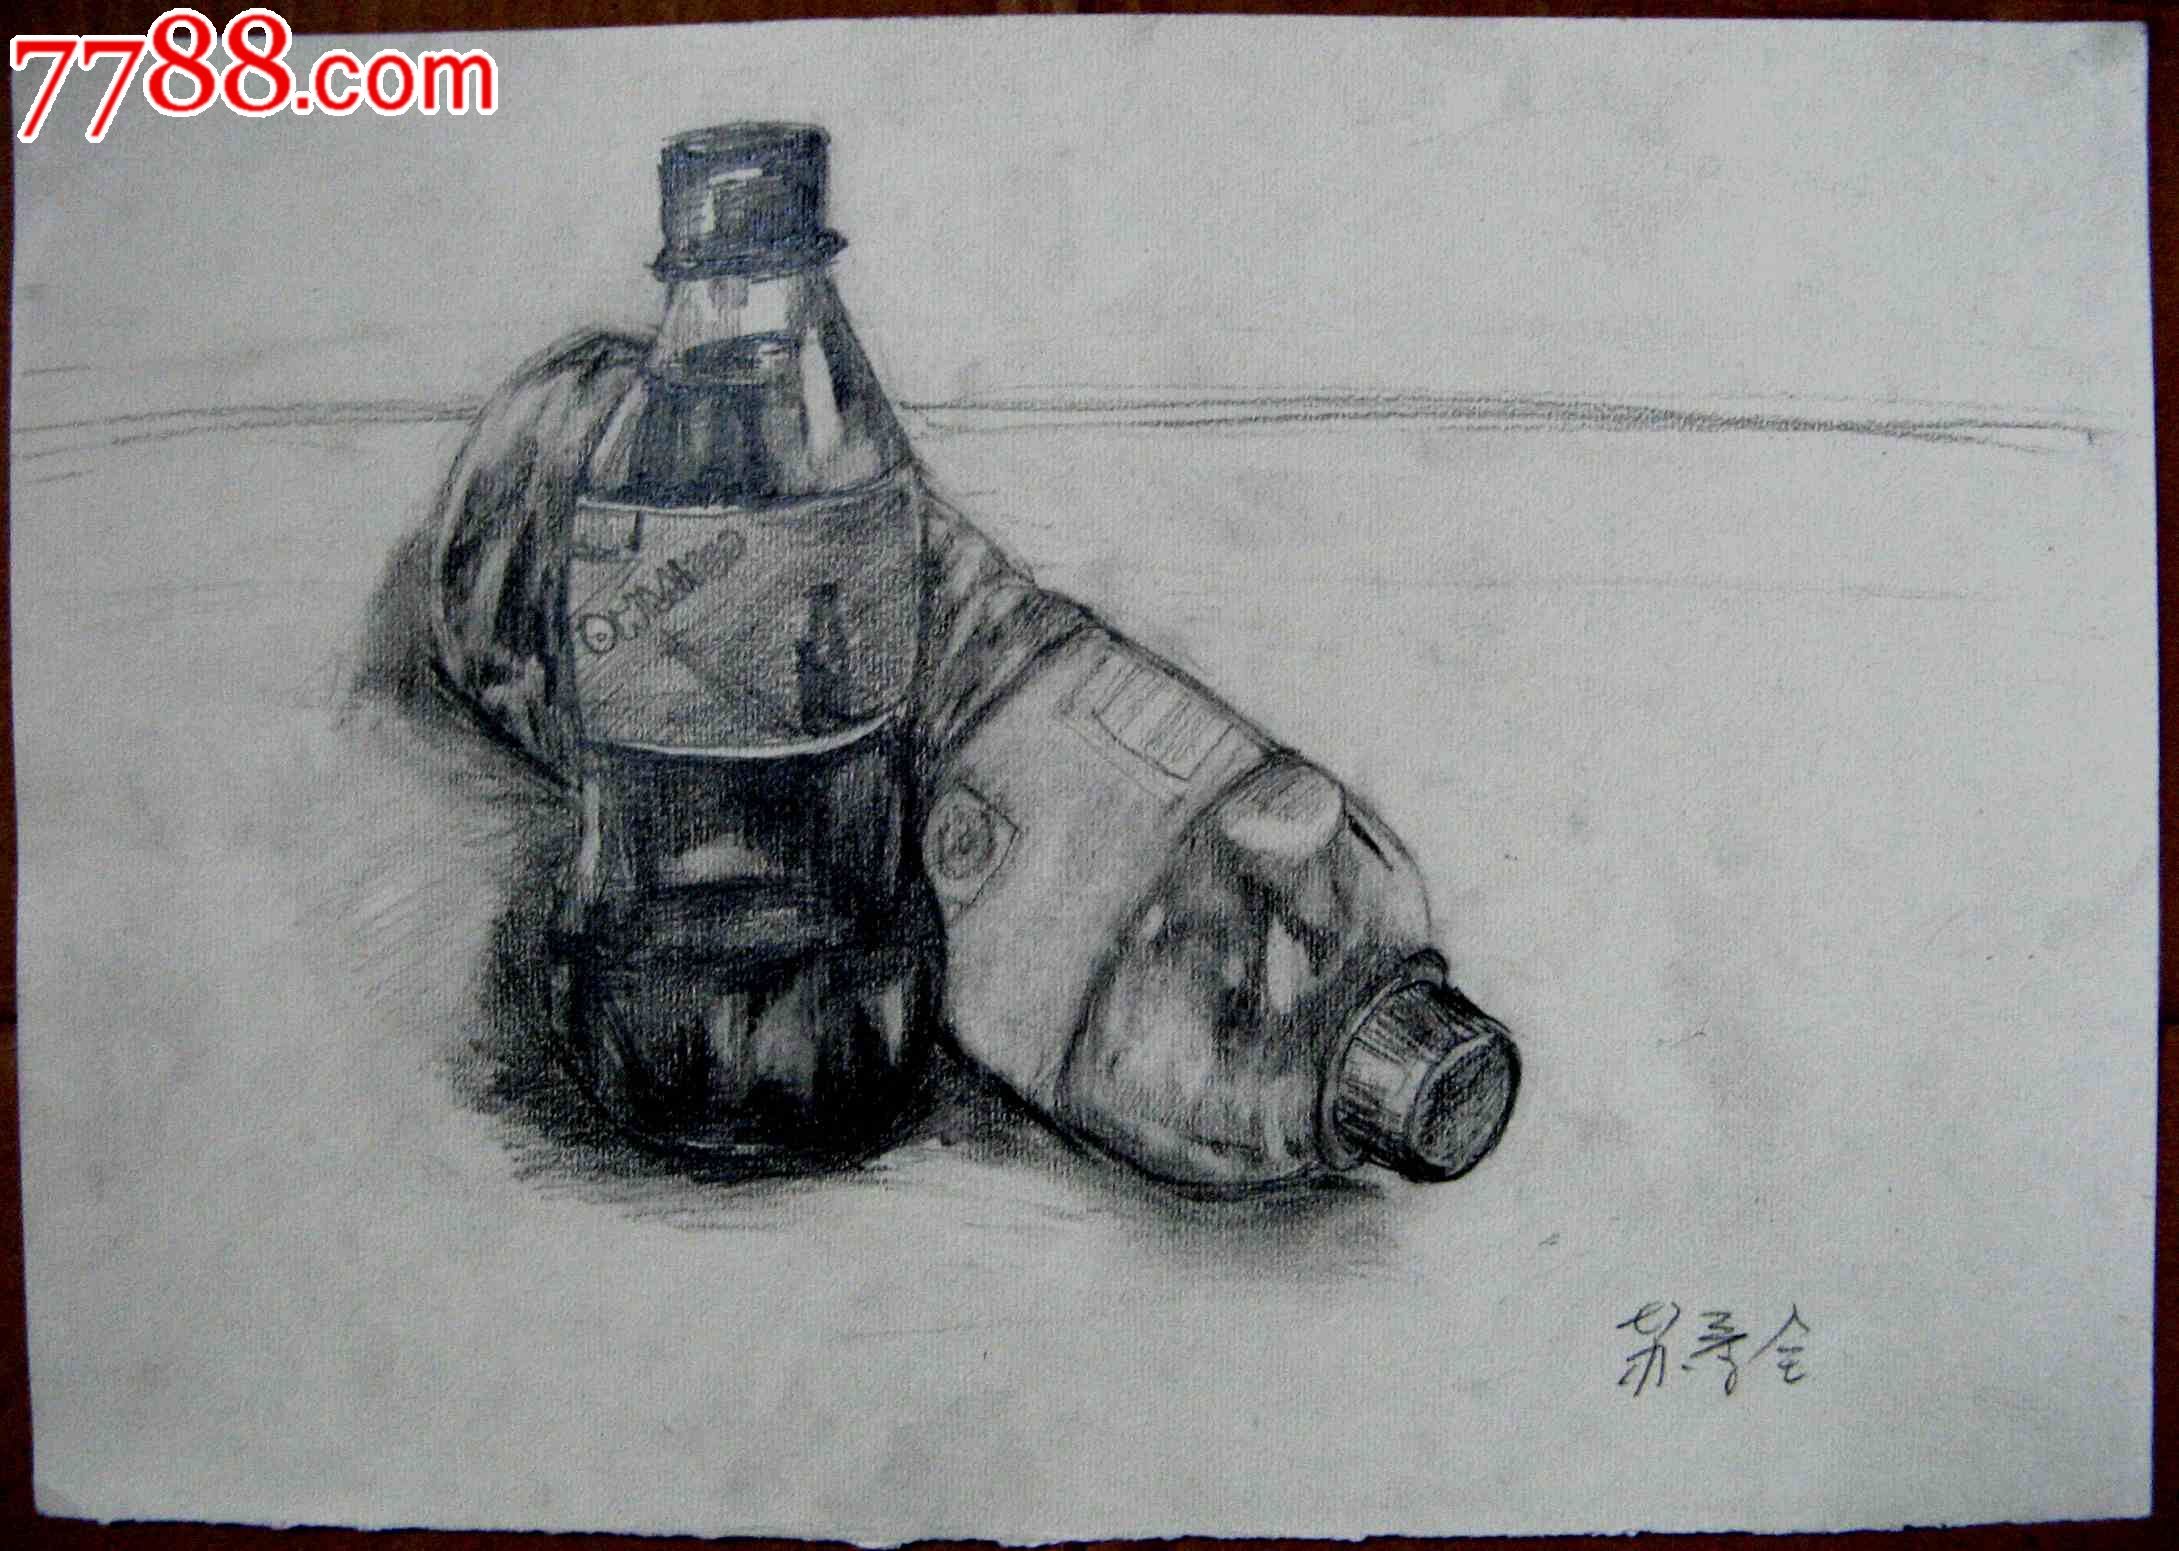 铅笔素描画:矿泉水瓶子